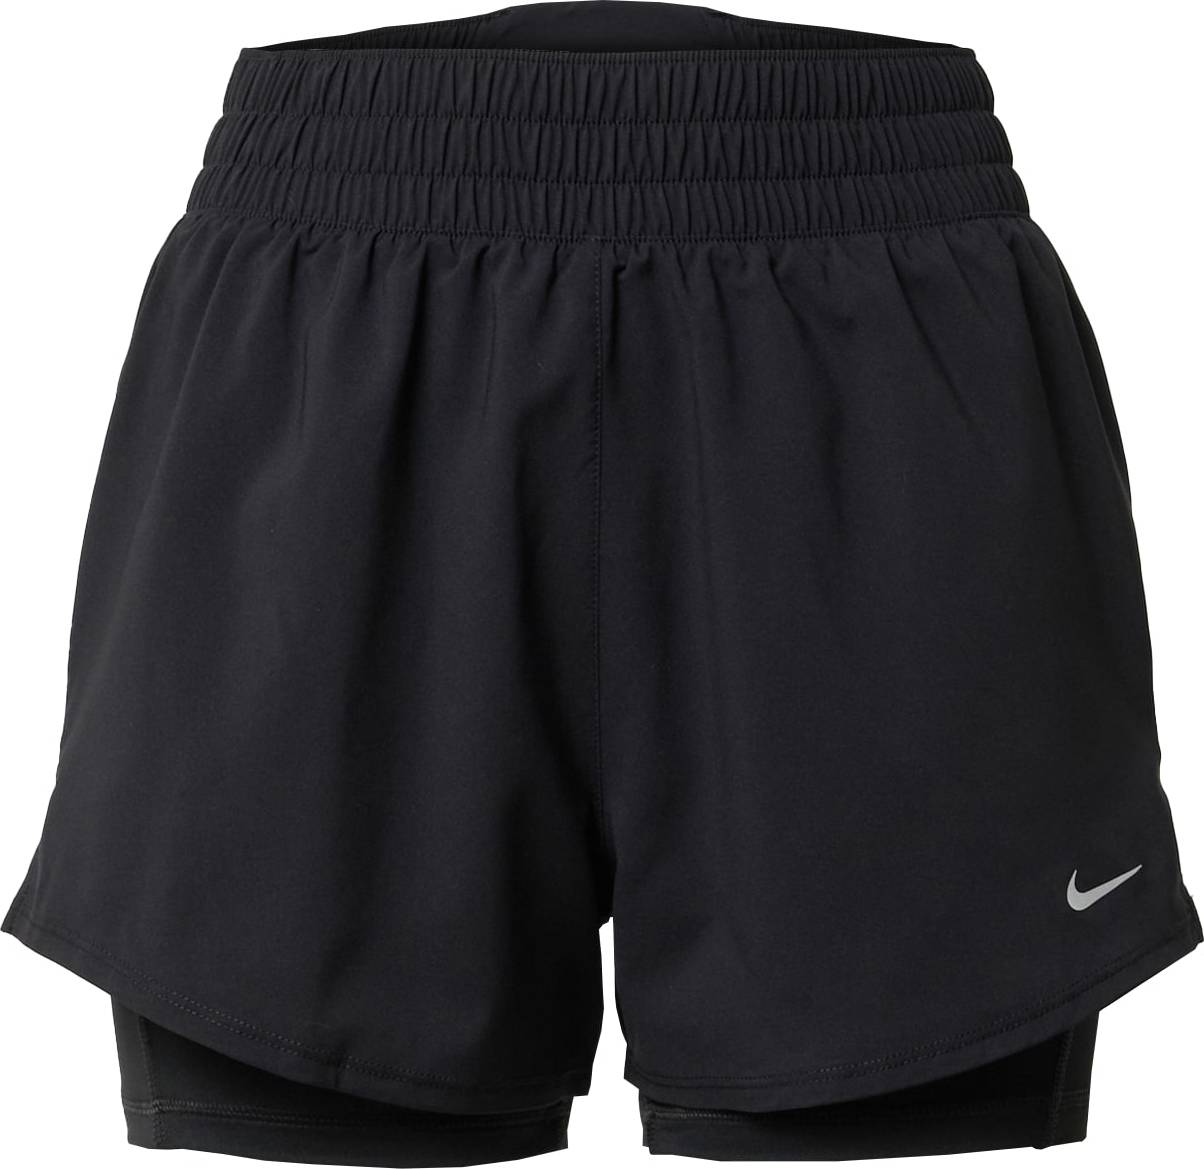 Sportovní kalhoty Nike černá / stříbrná